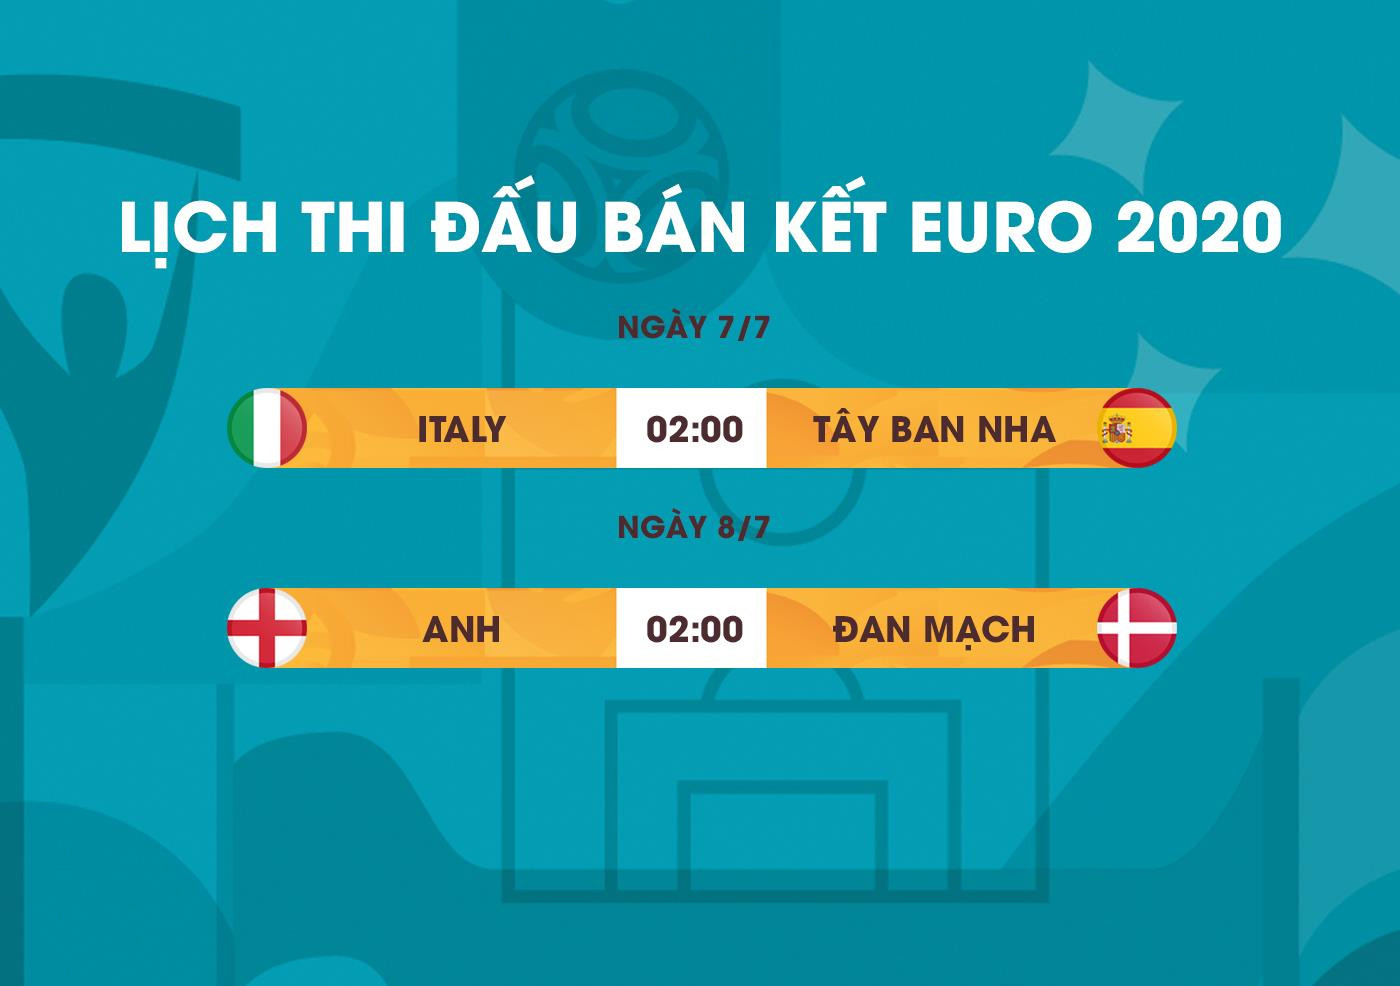 Lịch thi đấu bán kết EURO 2020: Italy vs Tây Ban Nha, Anh vs Đan Mạch - 1